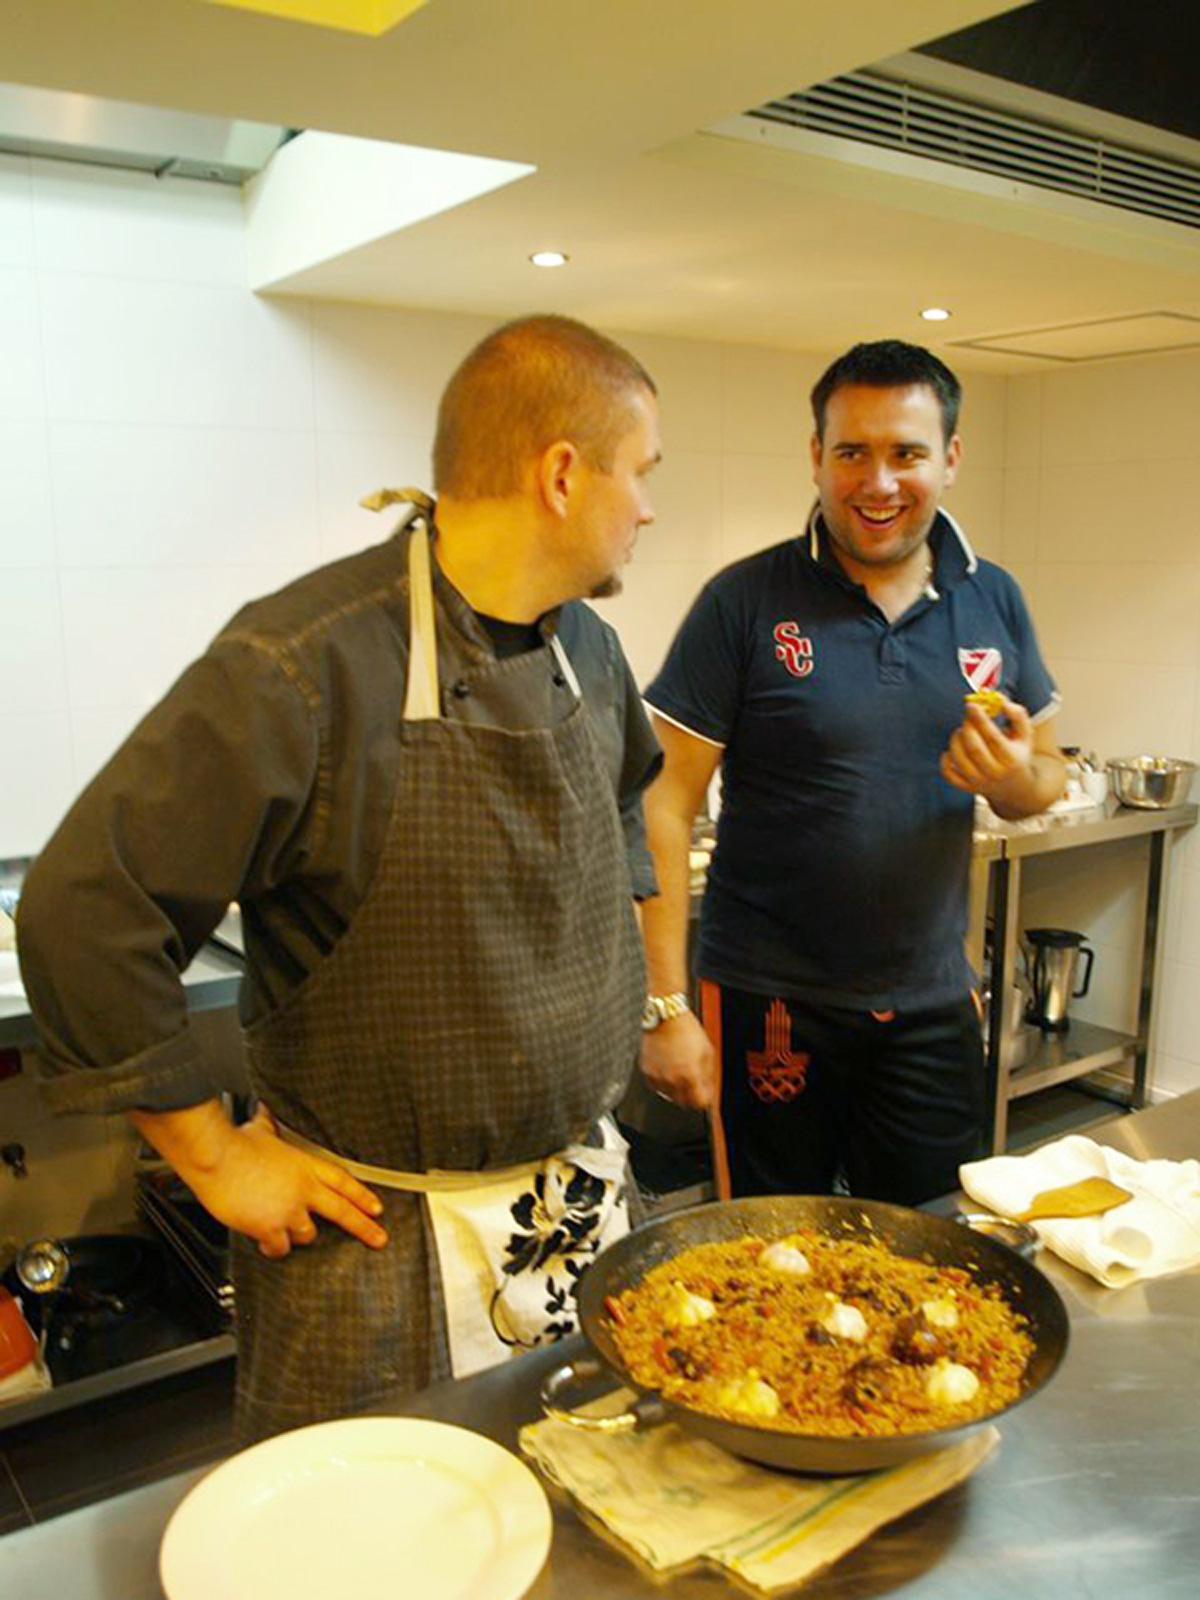 Кулинарный мастер класс - как готовить плов. Одесский блог Марии Каленской о кулинарии.